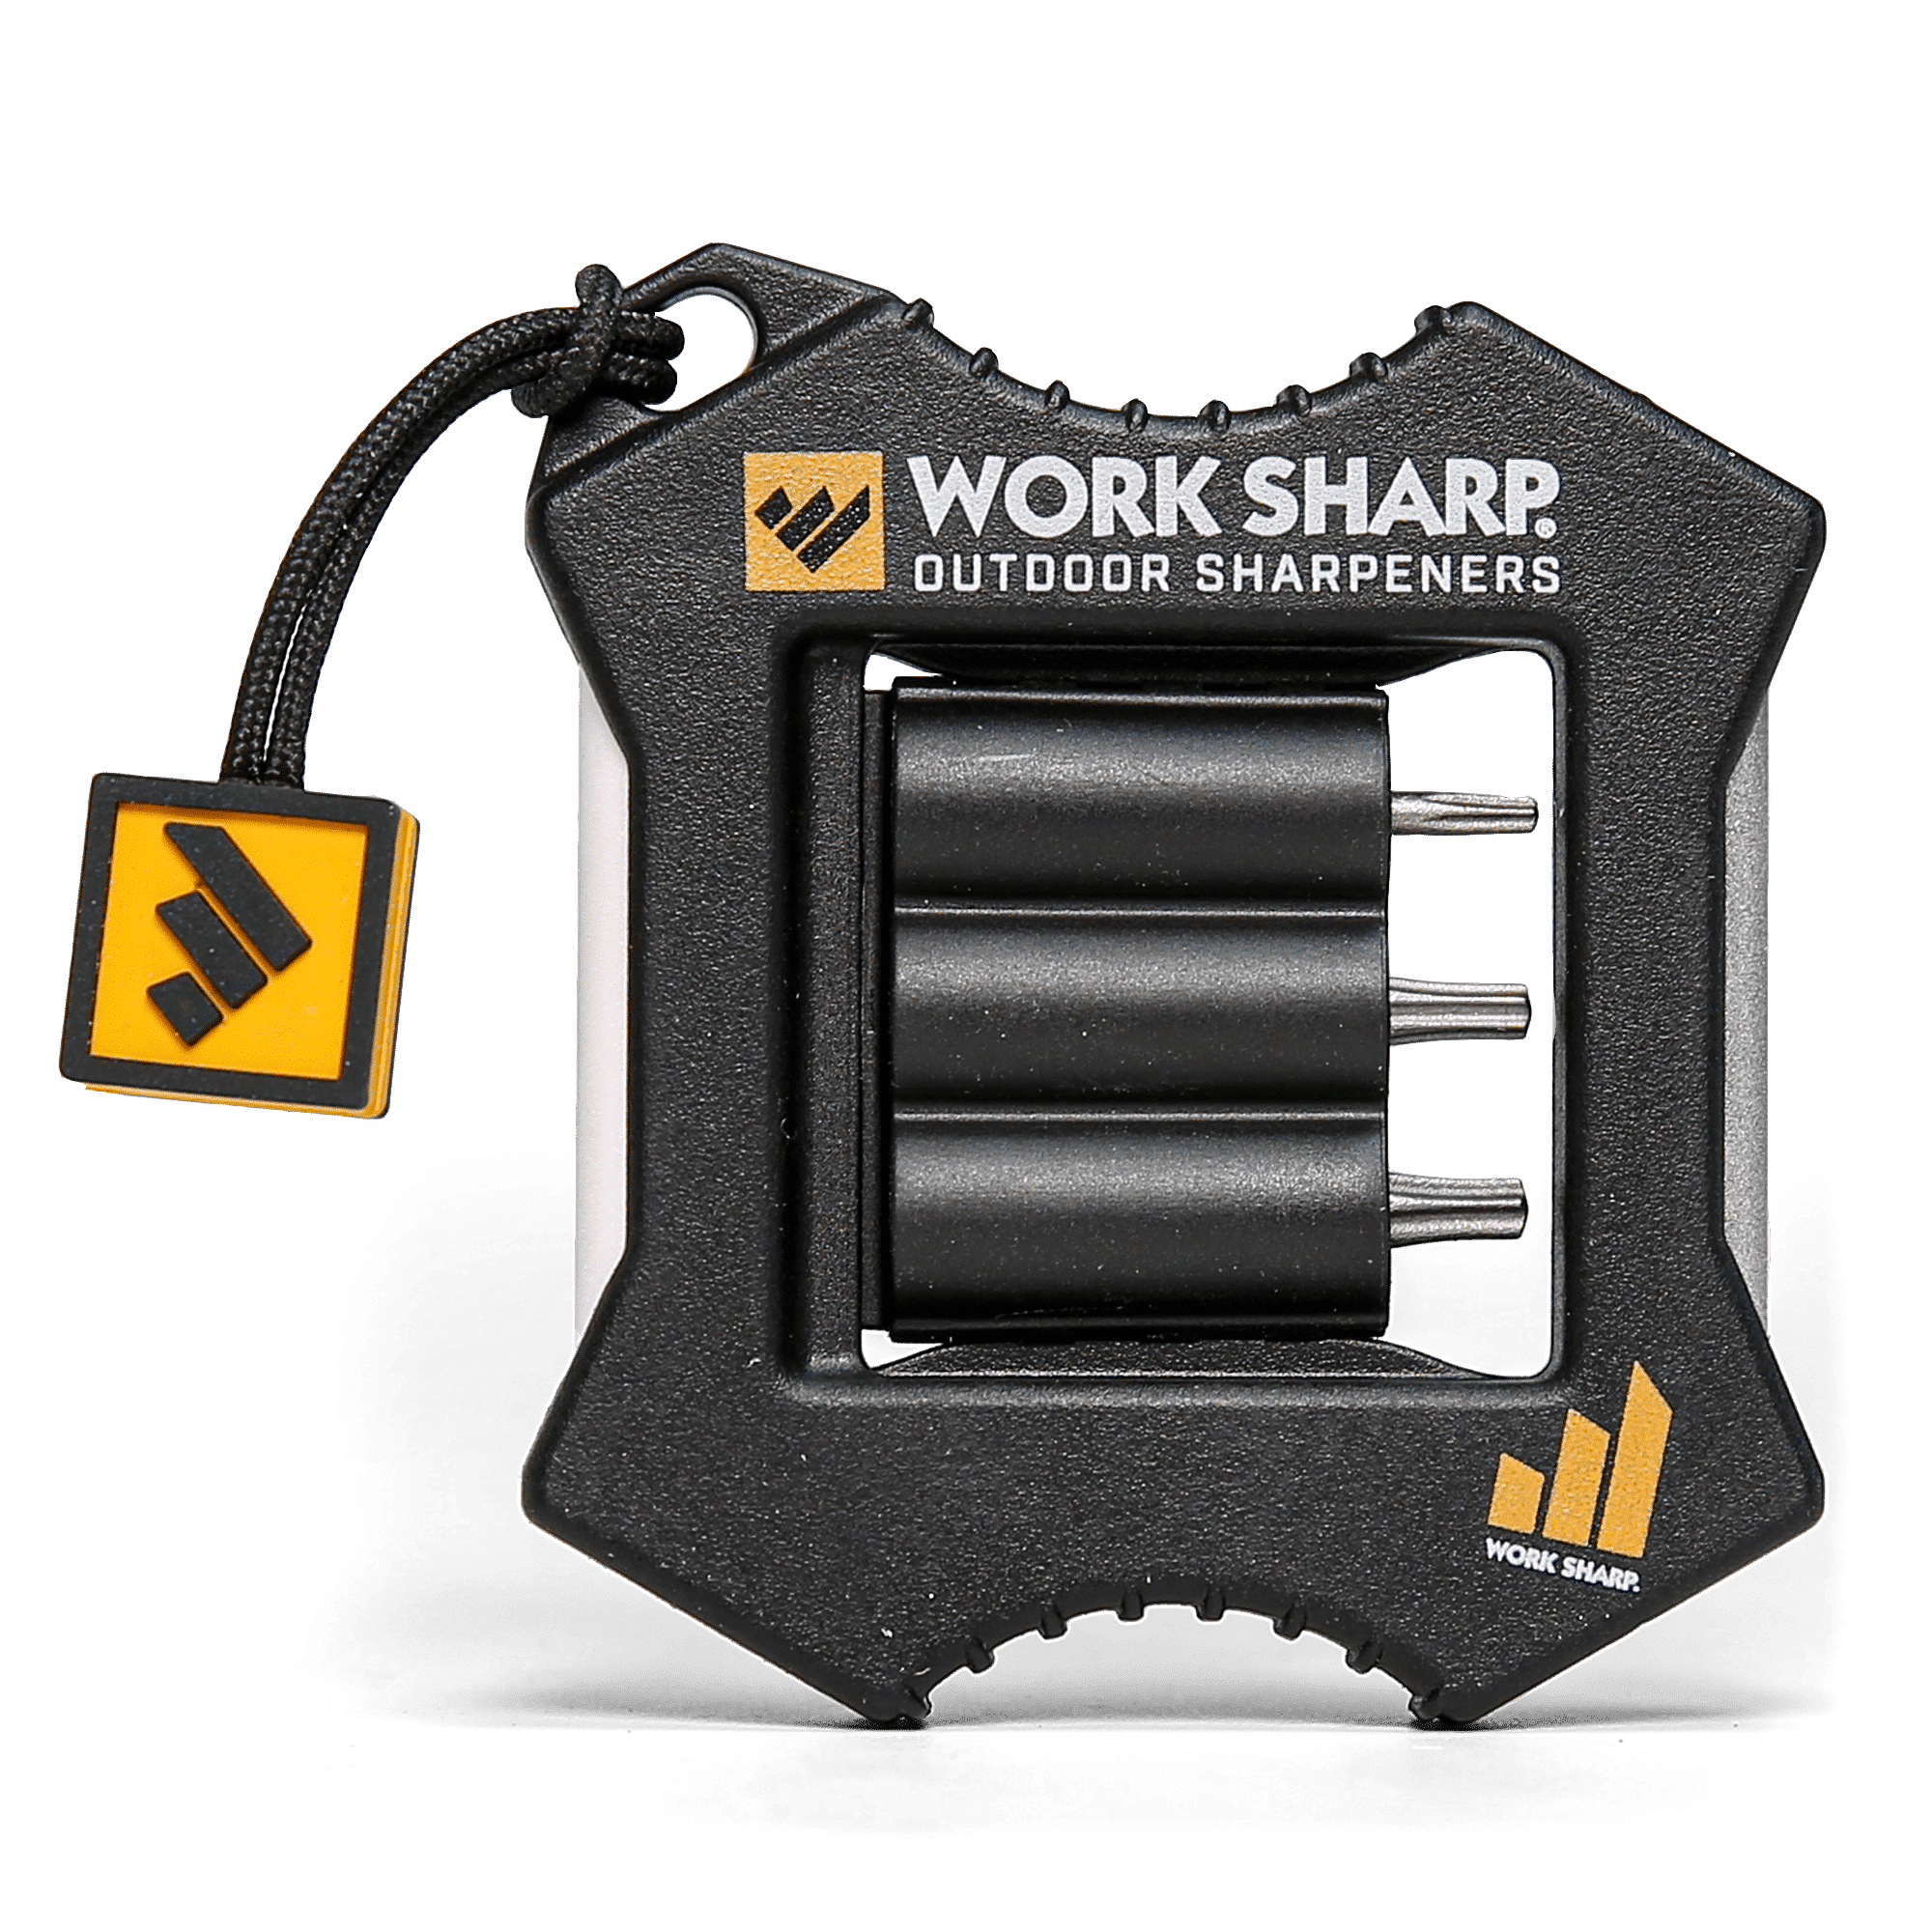 WorkShop Precision Adjustable Knife Sharpener Pivot Response